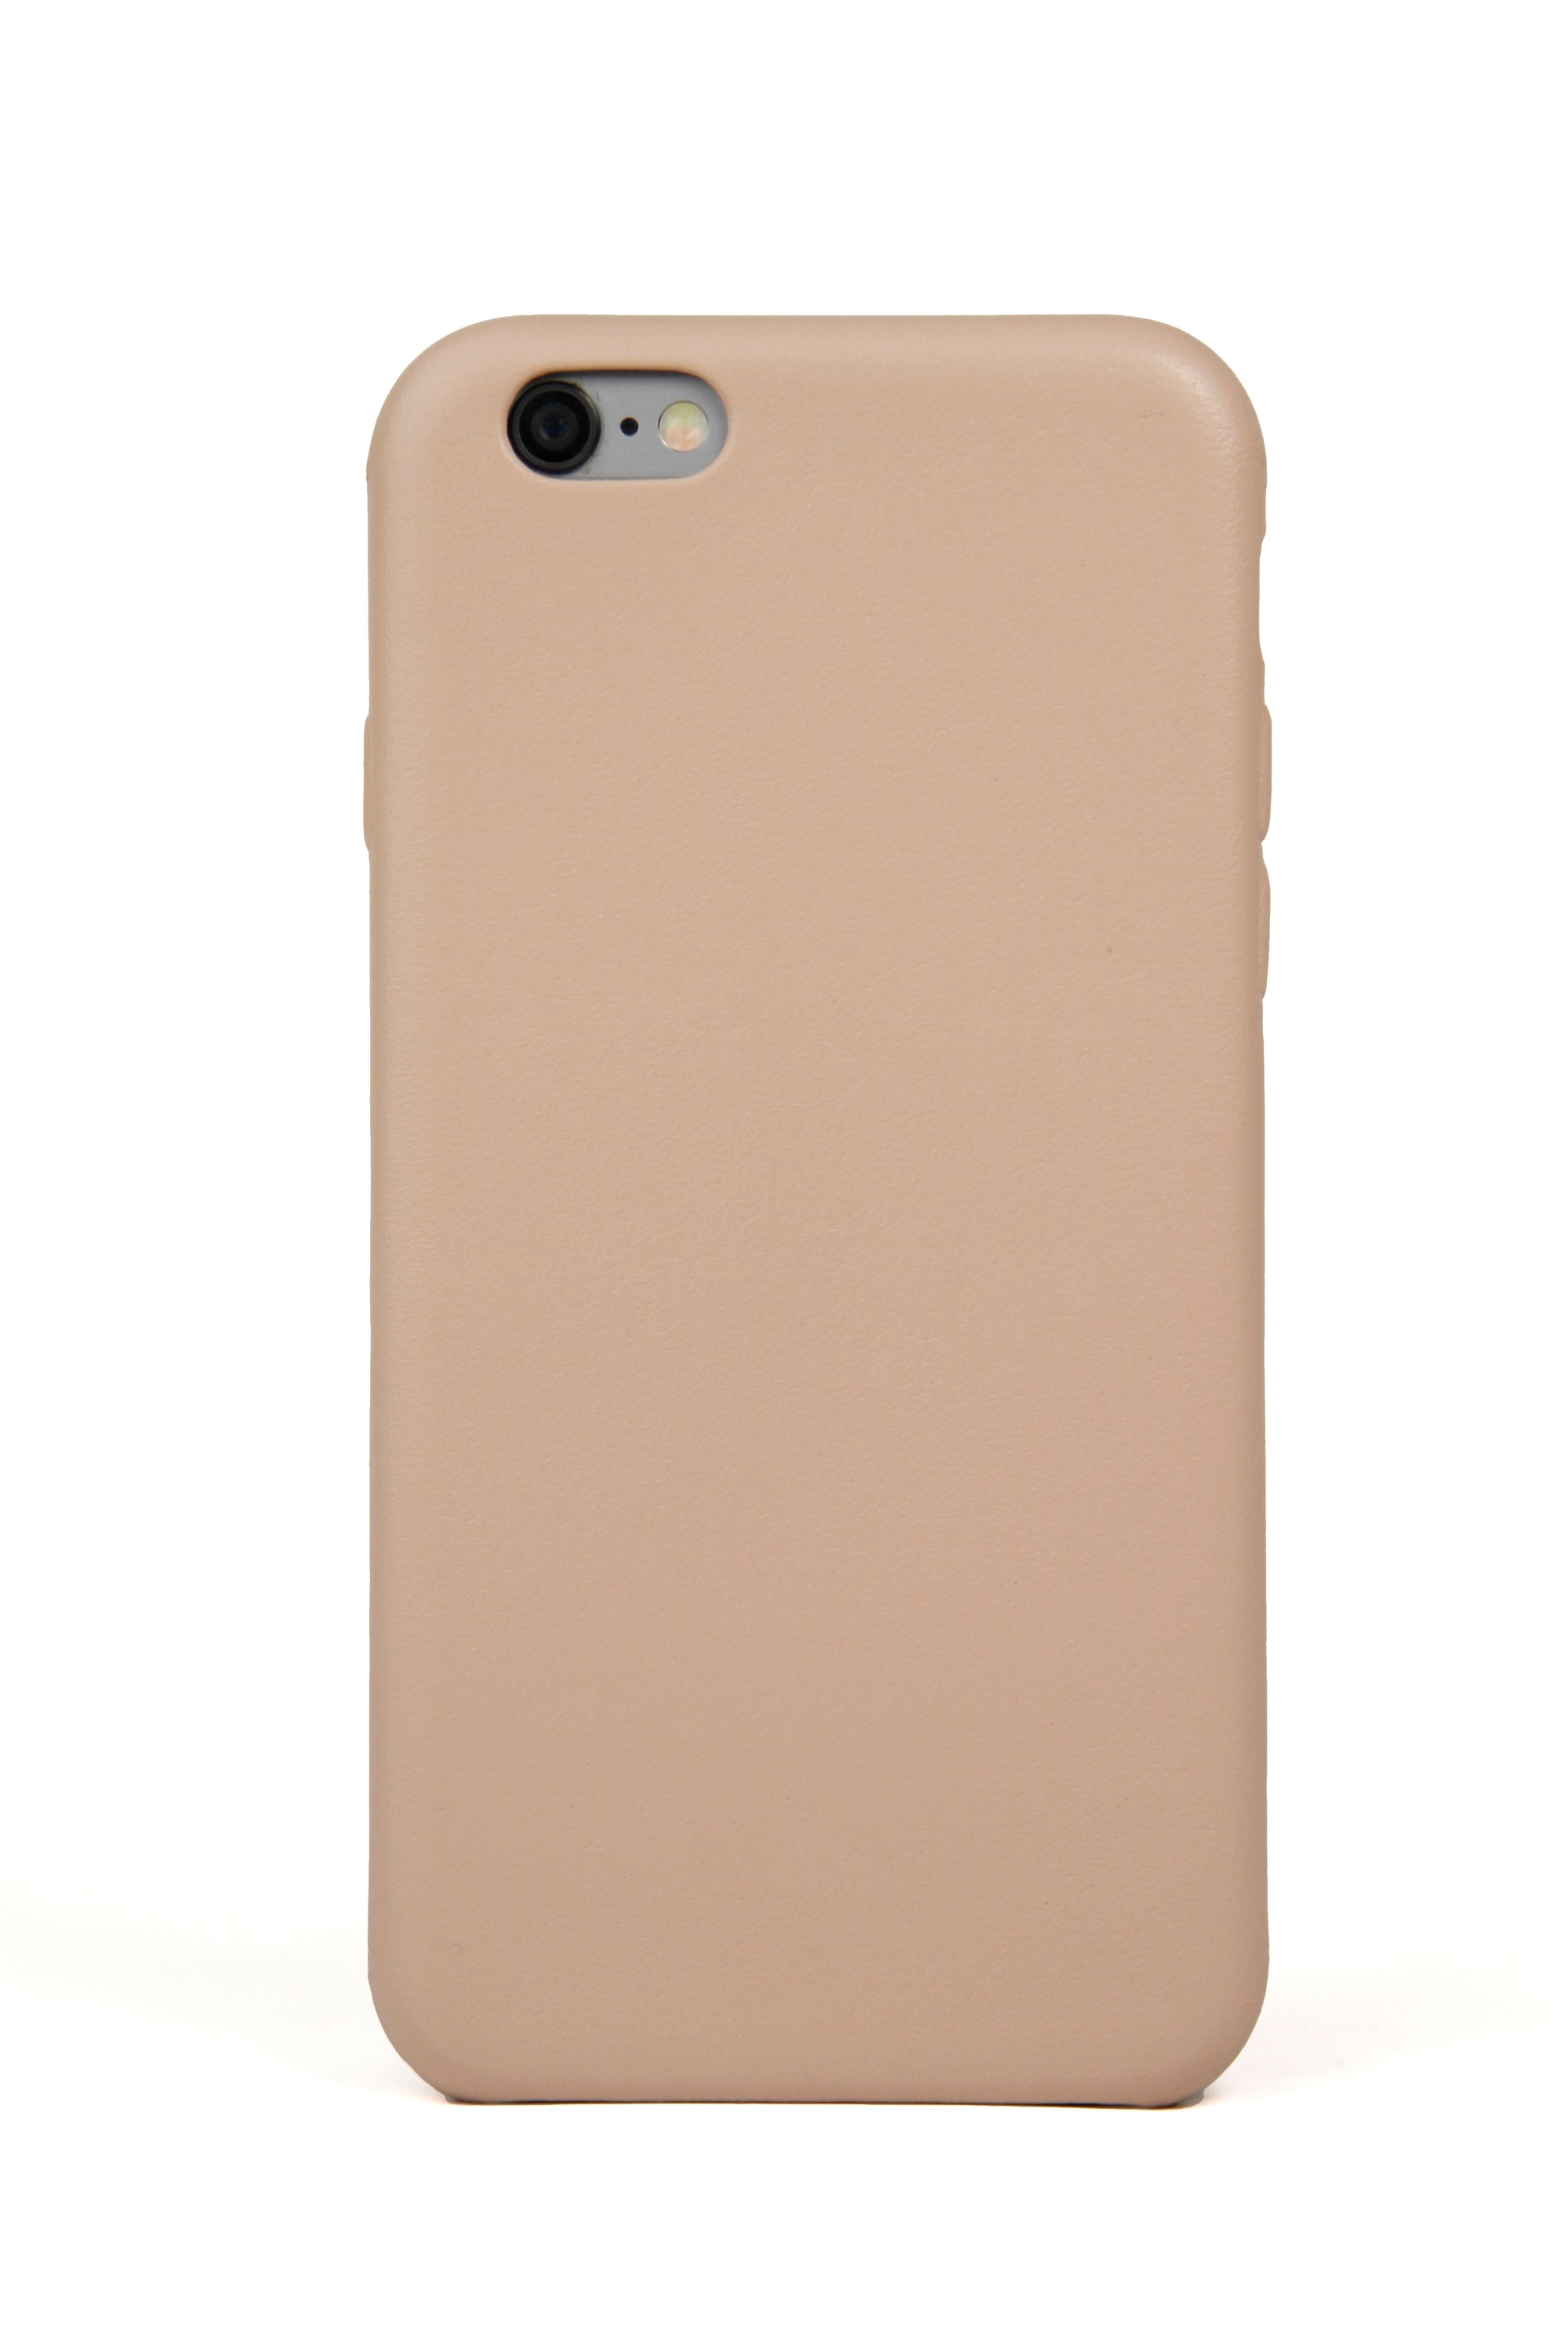 iPhone 6, cuir rose